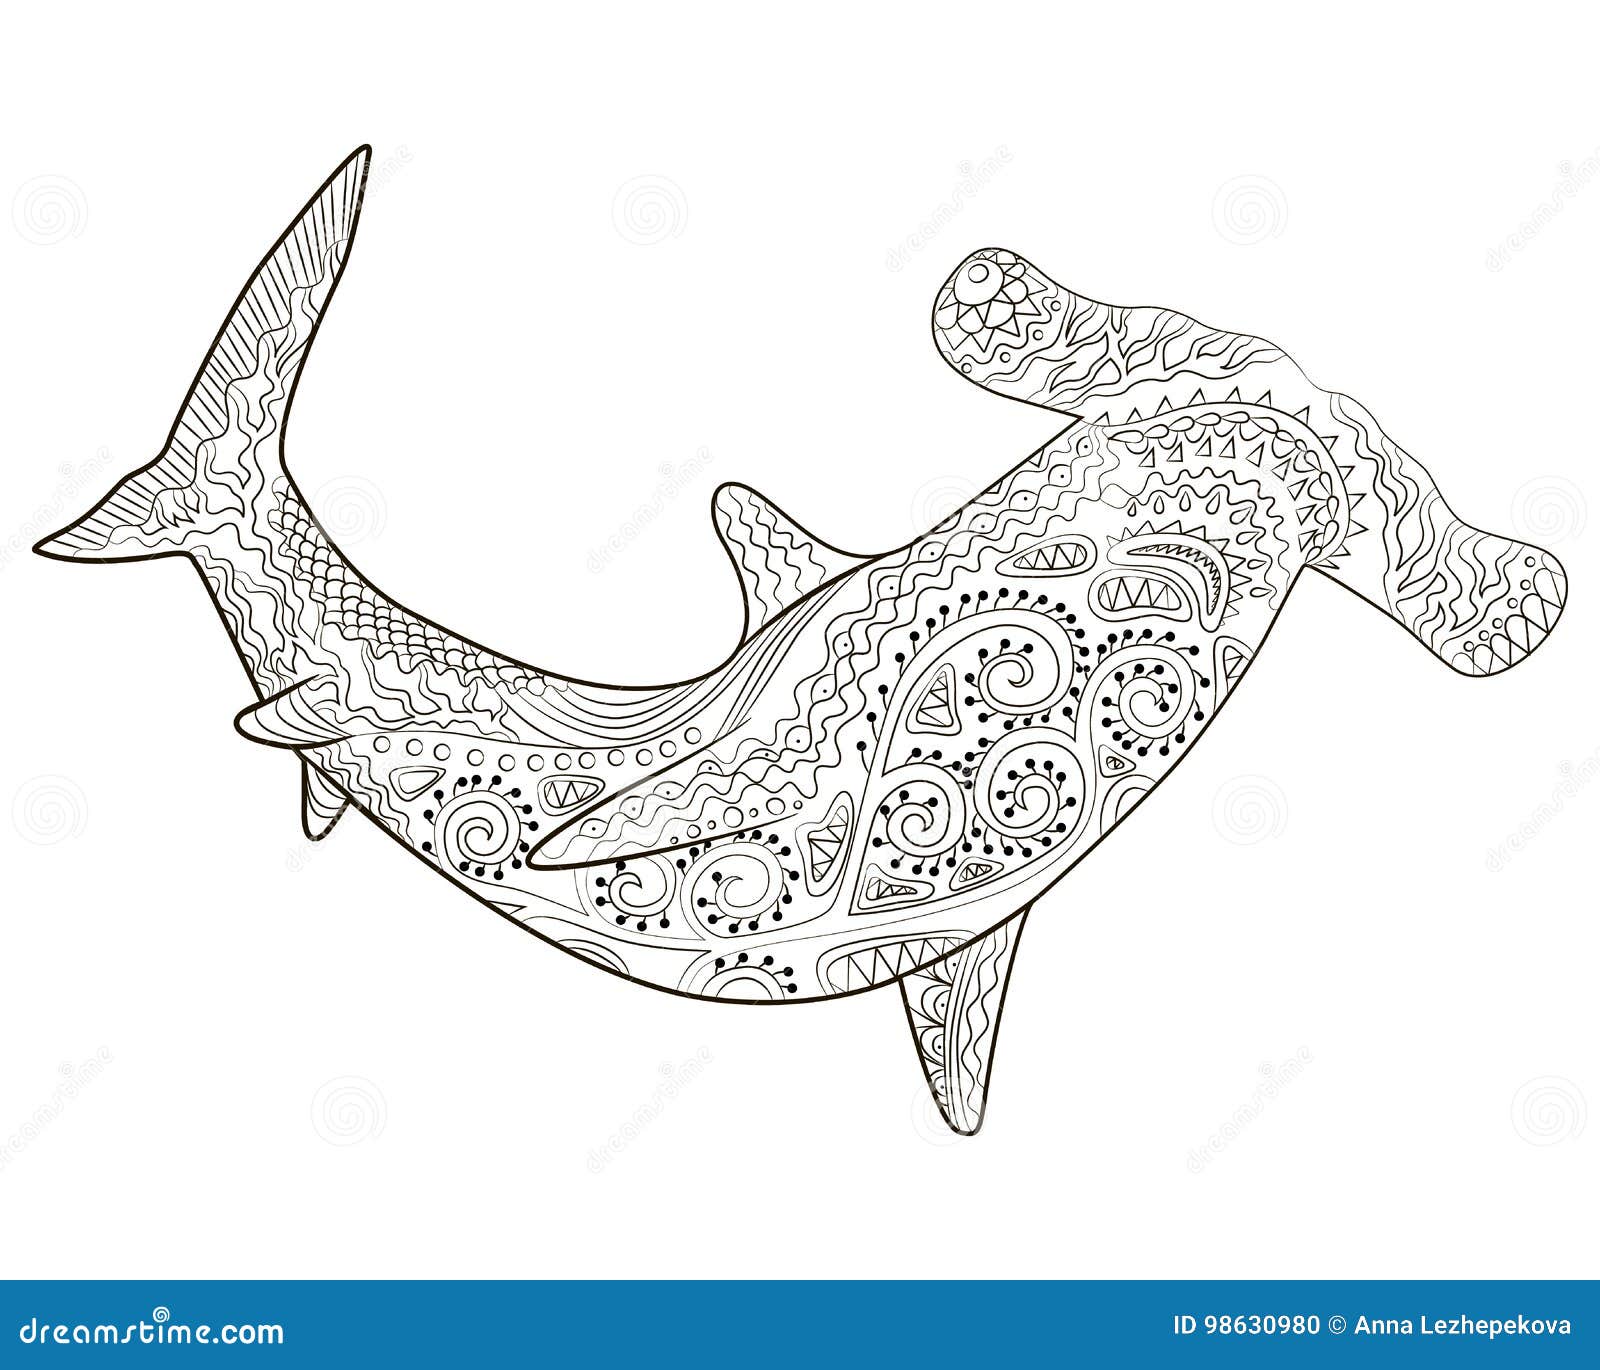 Shark coloring stock illustrations â shark coloring stock illustrations vectors clipart